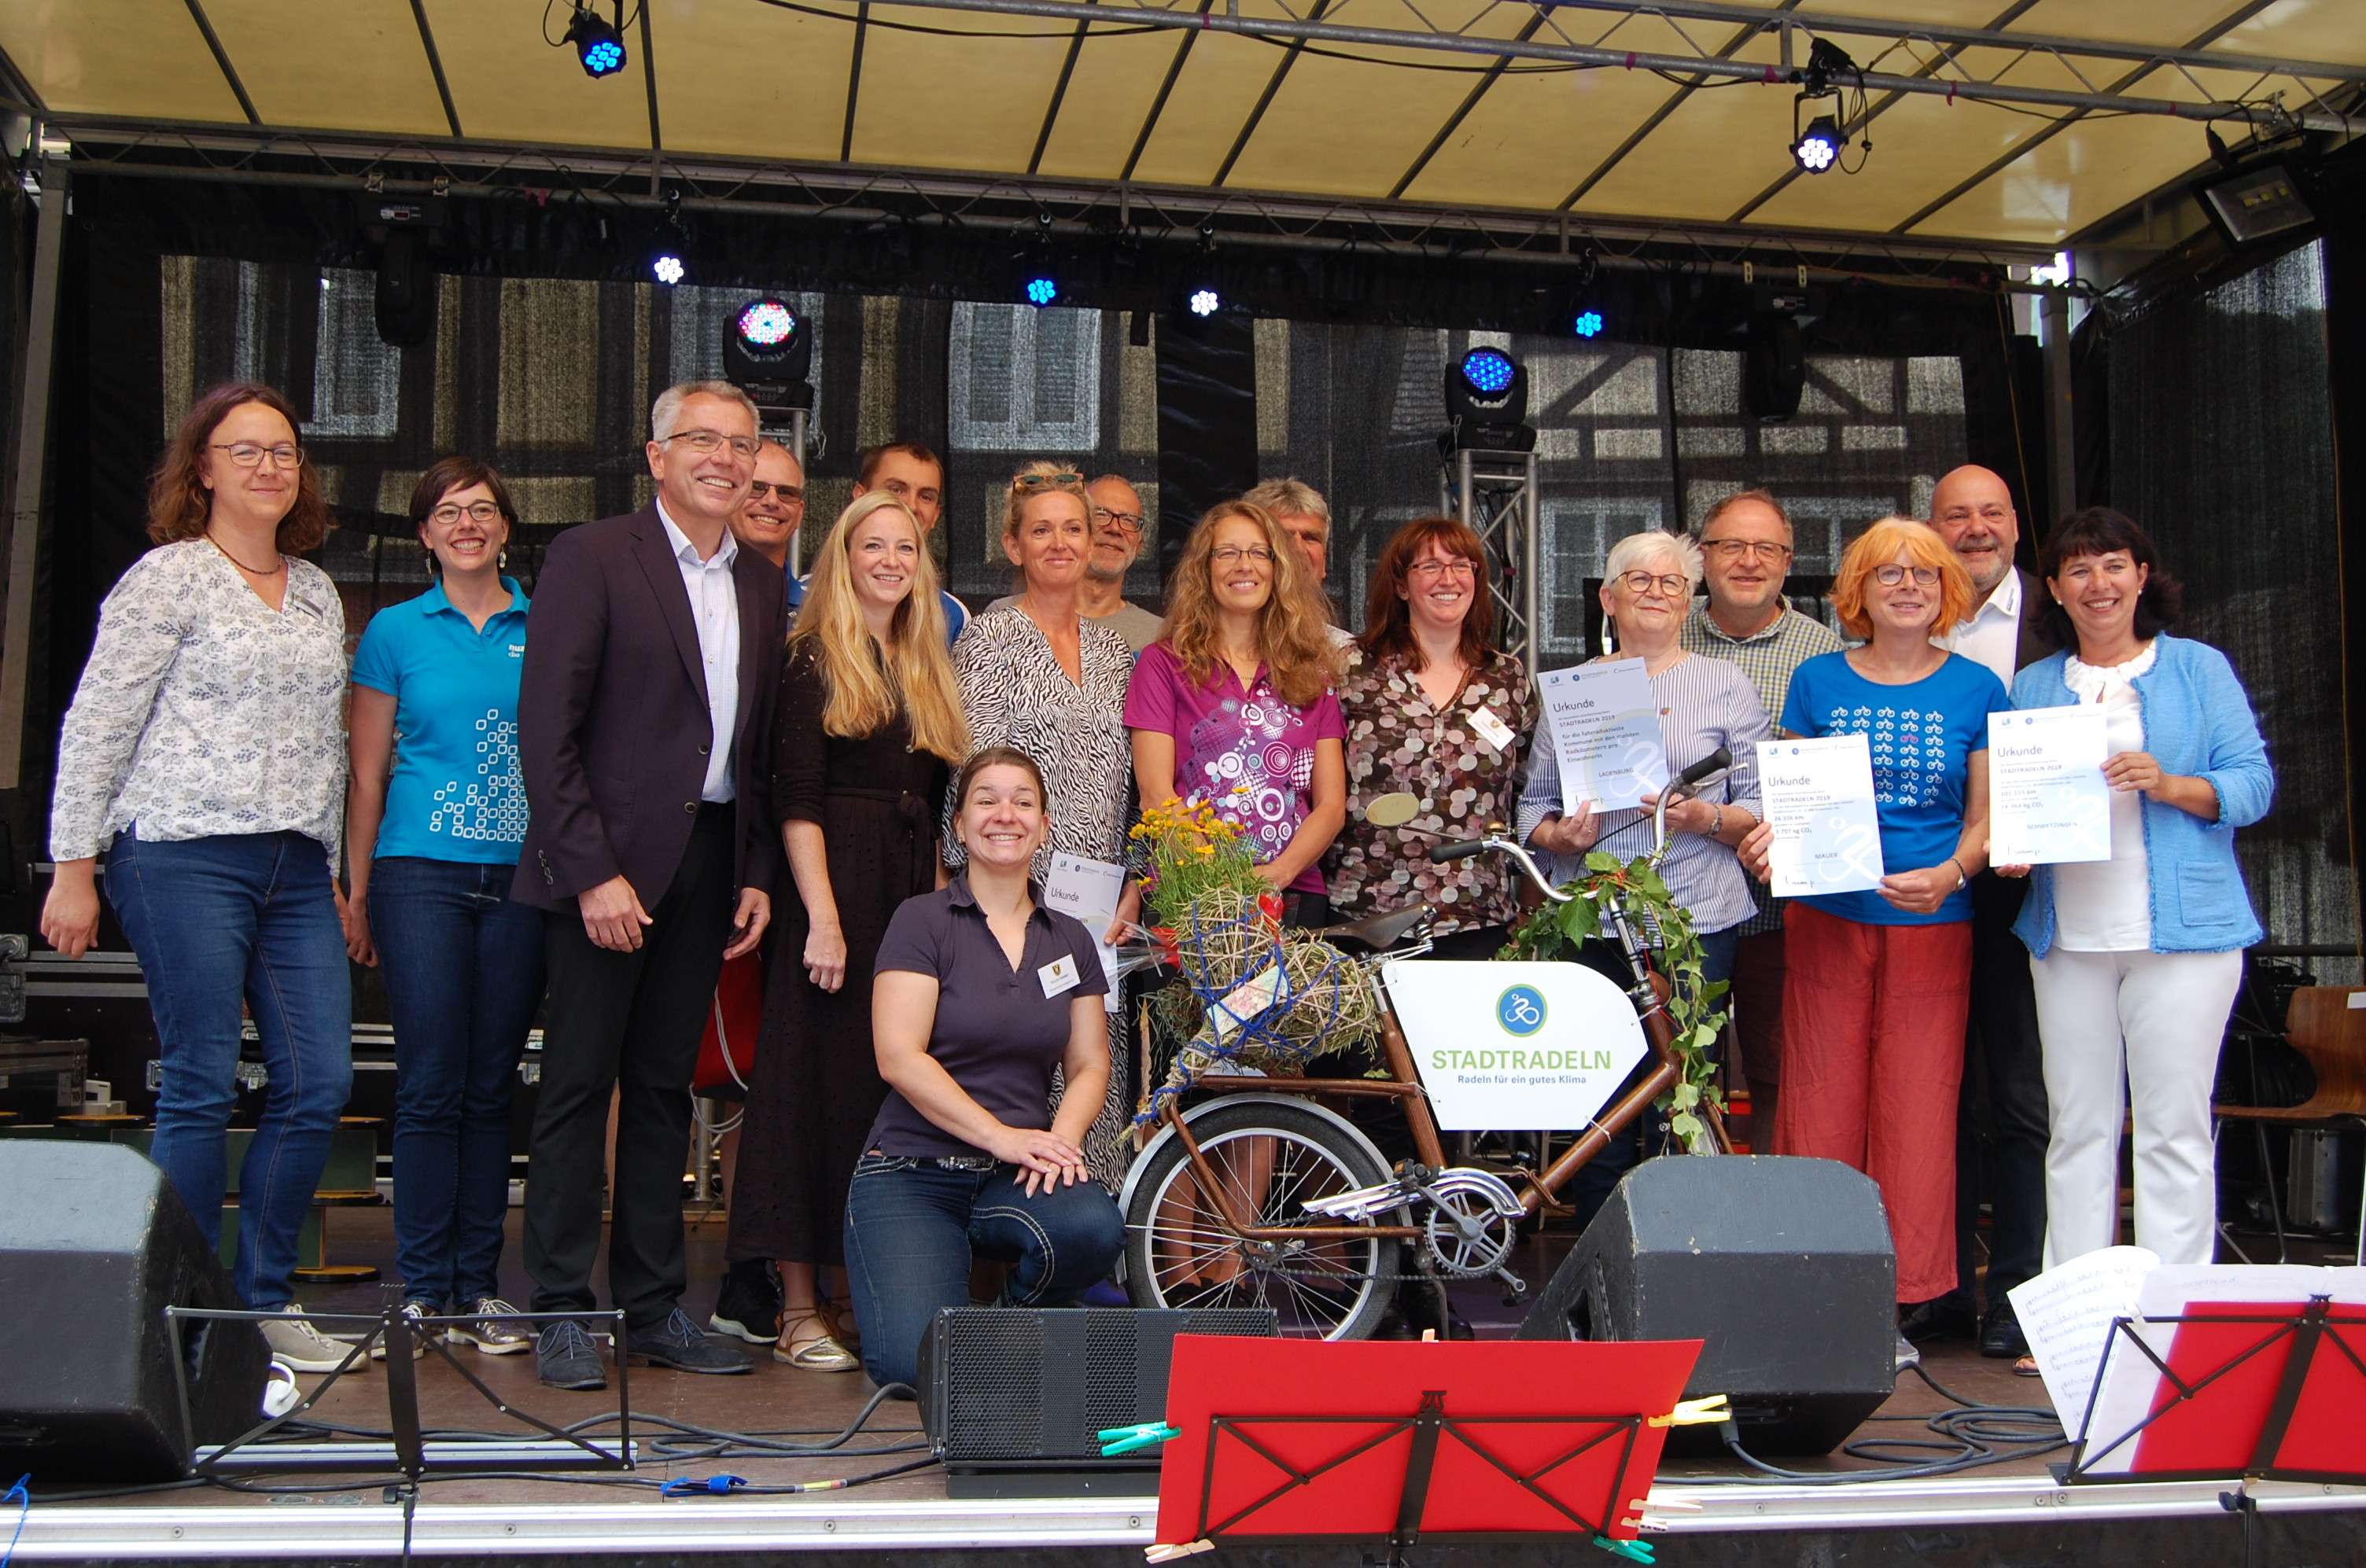  Auf der Bühne überreichte der Landrat die Urkunden an die Gewinner / Foto Fr. Polte Stadt Neckargemünd 